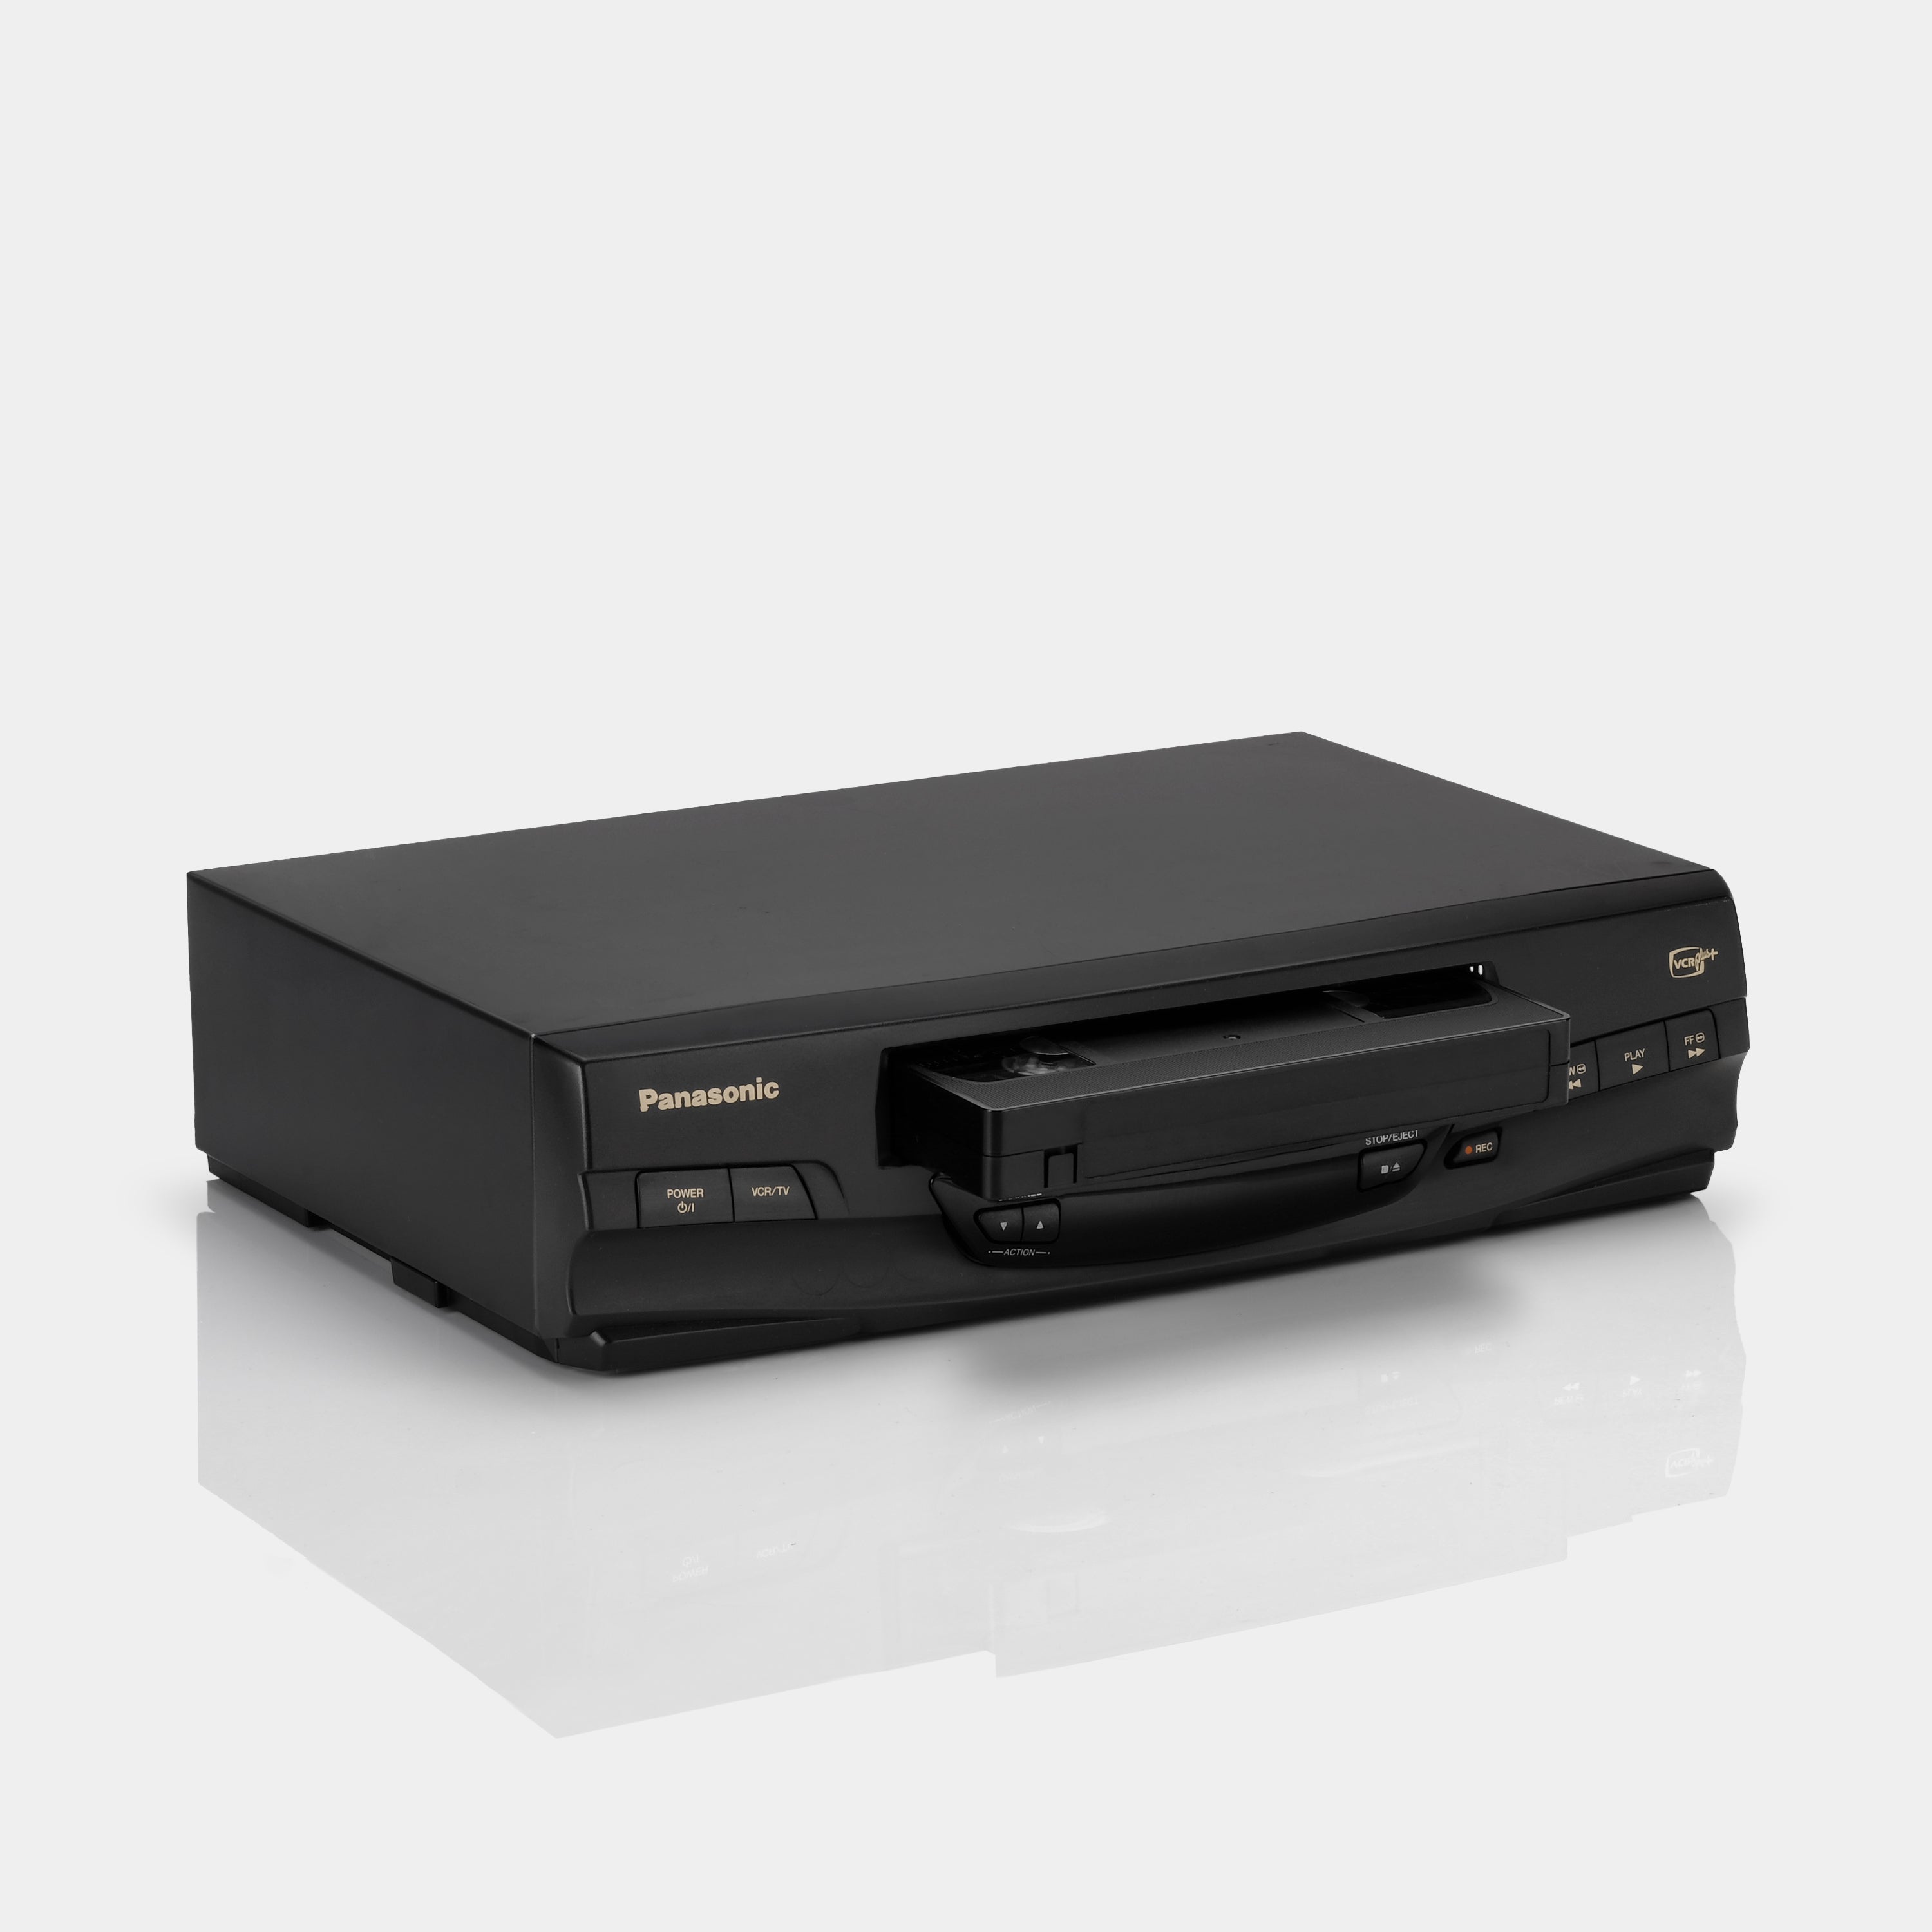 Panasonic PV-V4530S VCR VHS Player